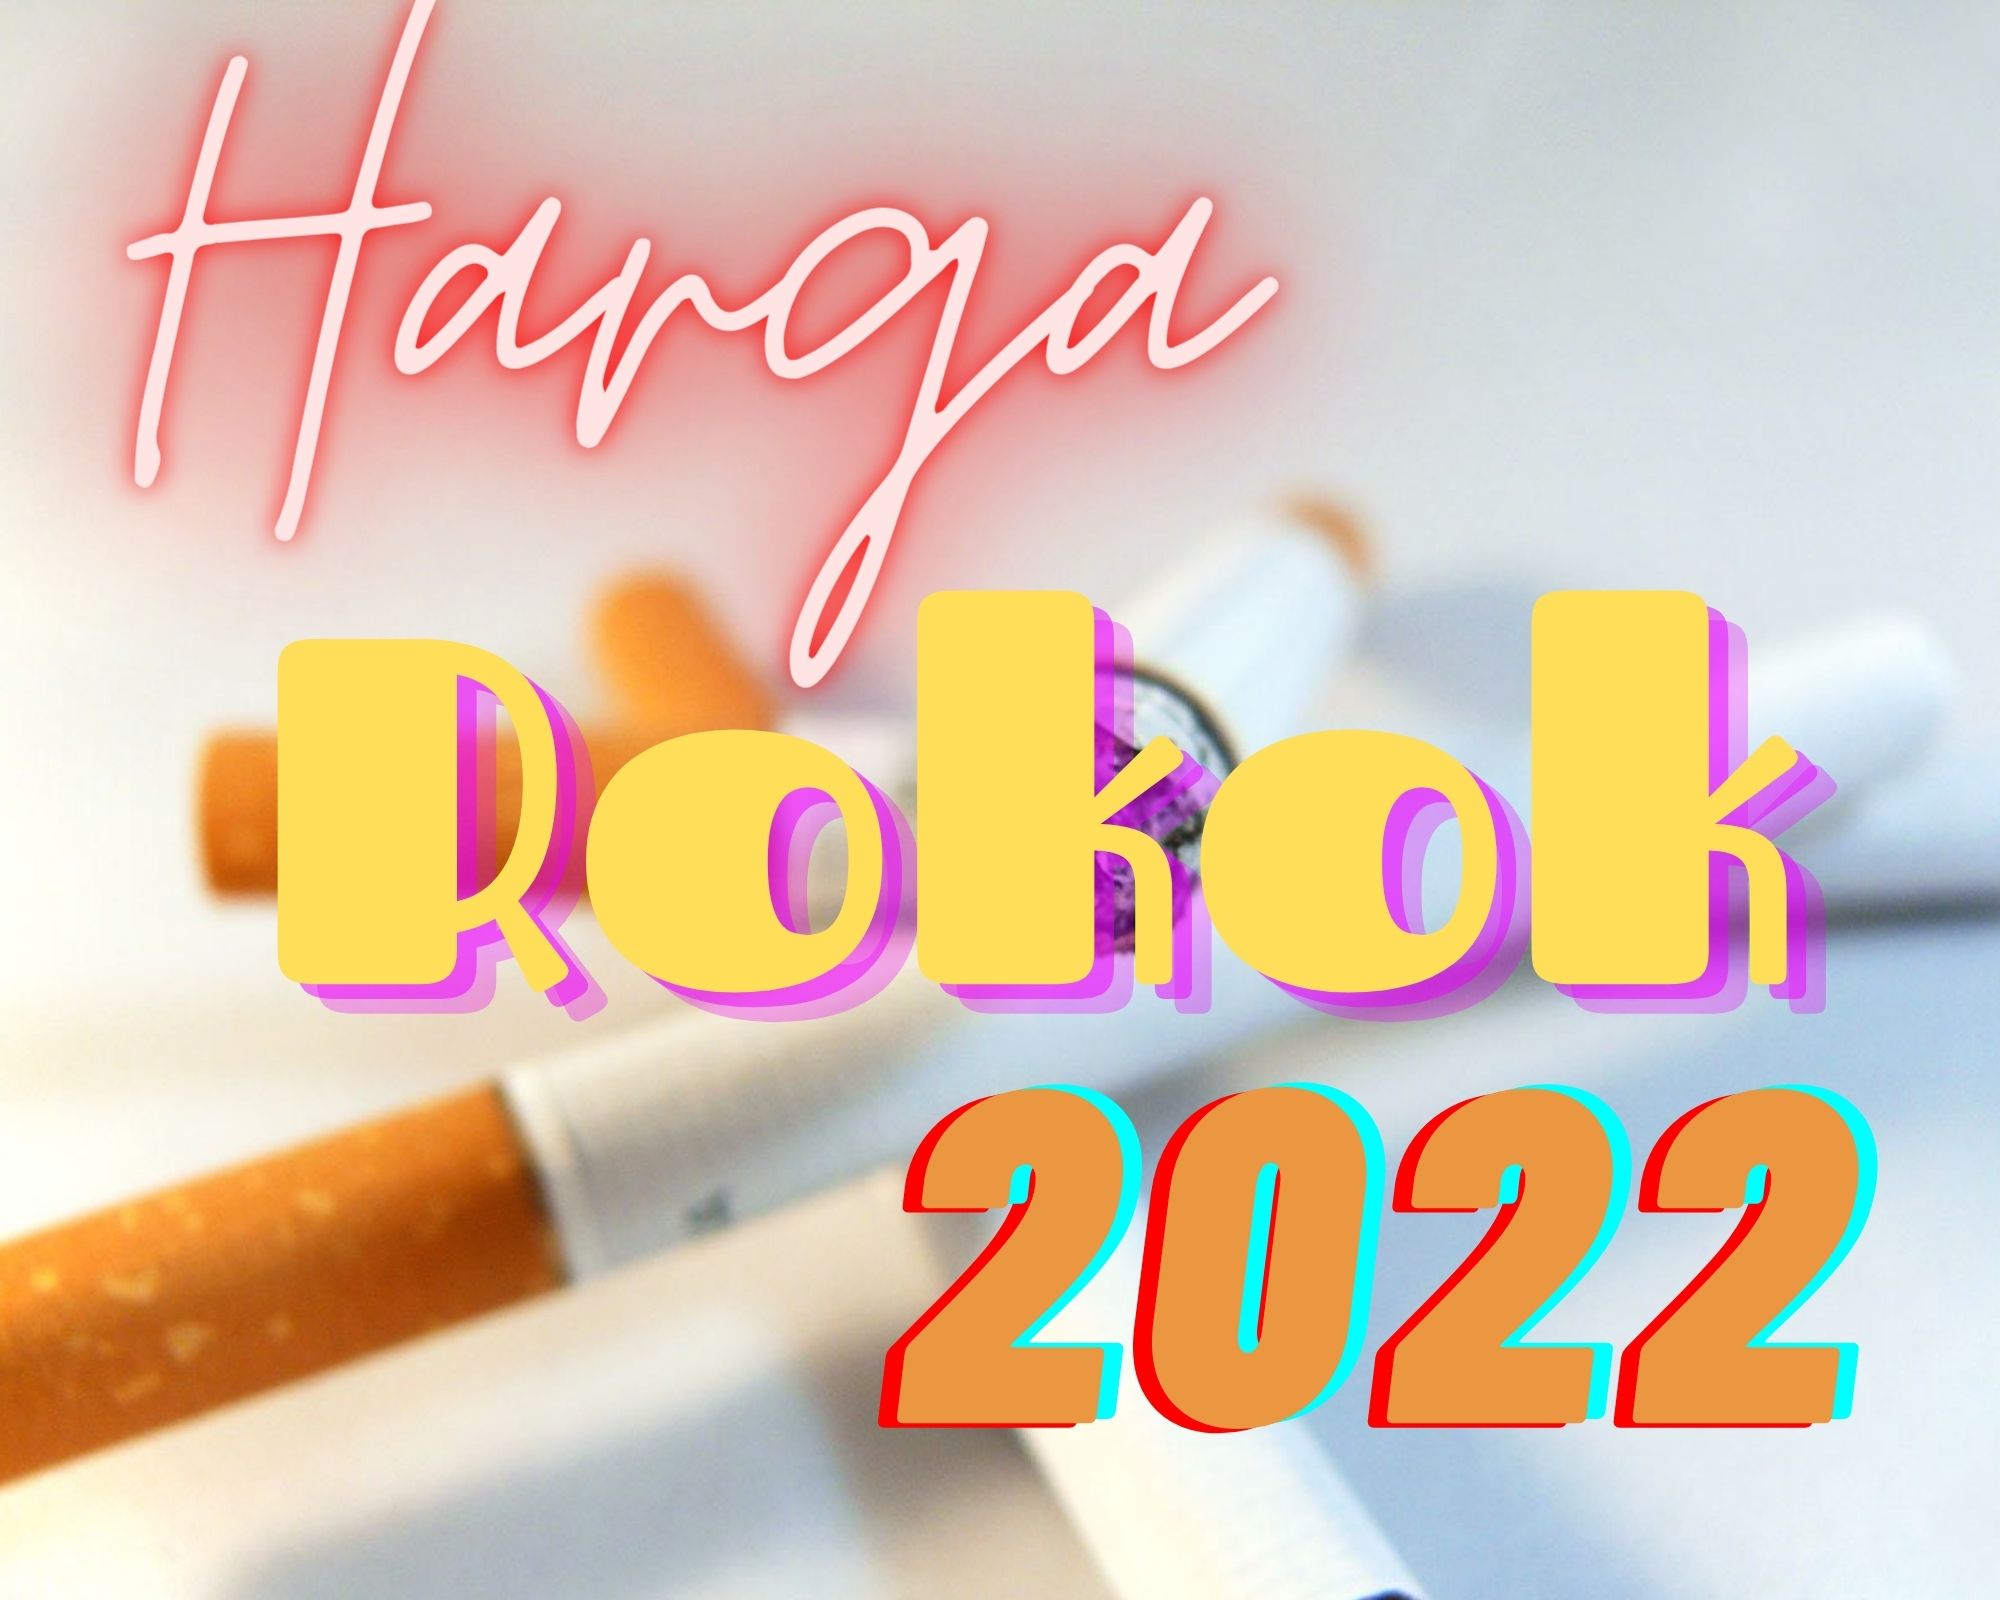 Harga Rokok Terbaru Januari 2022 Setelah Tarif Cukai Naik 12%
(ilustrasi)